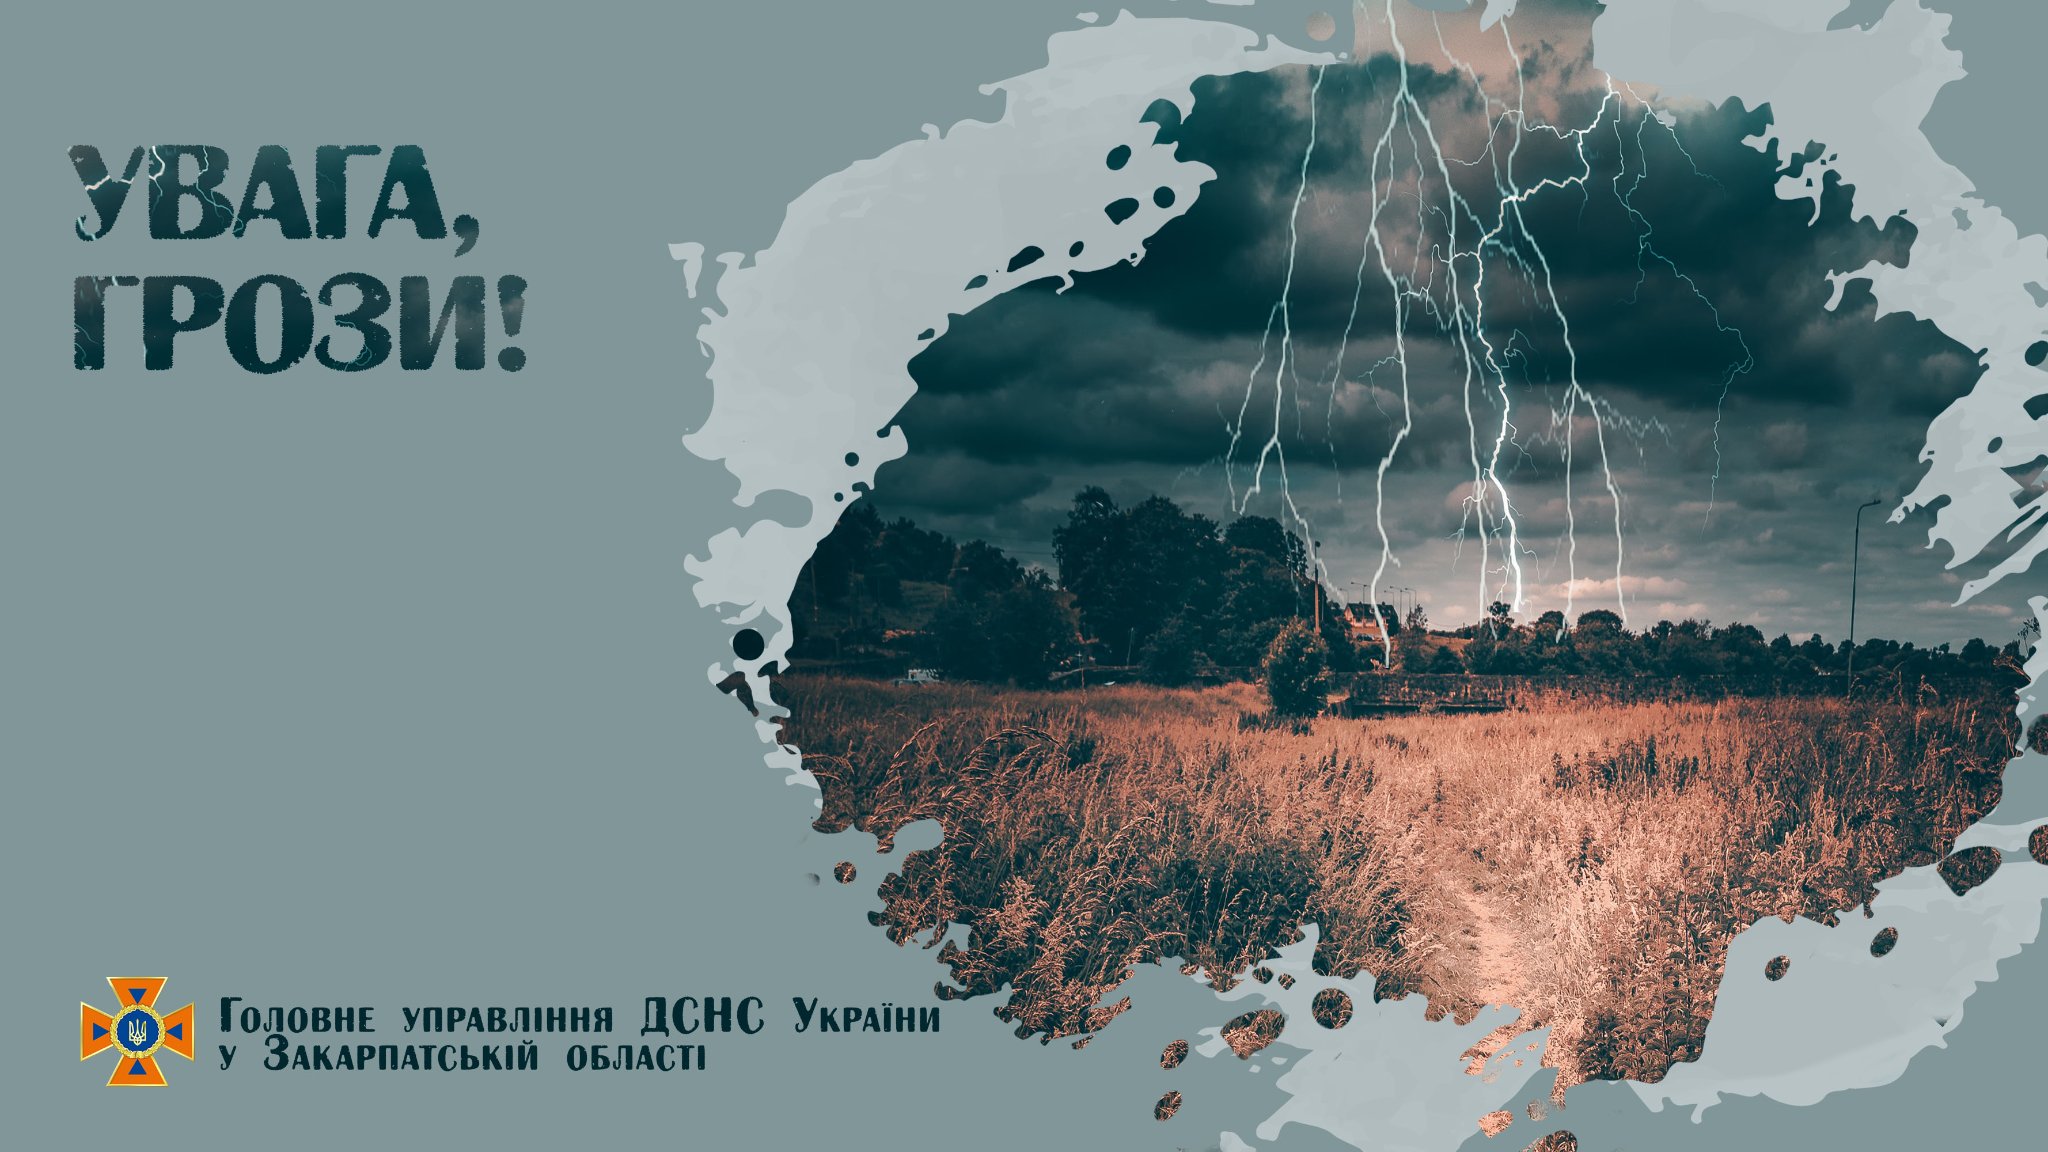 Головне управління ДСНС України у Закарпатській області попереджає про небезпеку ввечері 30 липня, а також вночі та вранці 31 липня на території Закарпатської області та в м. Ужгород.